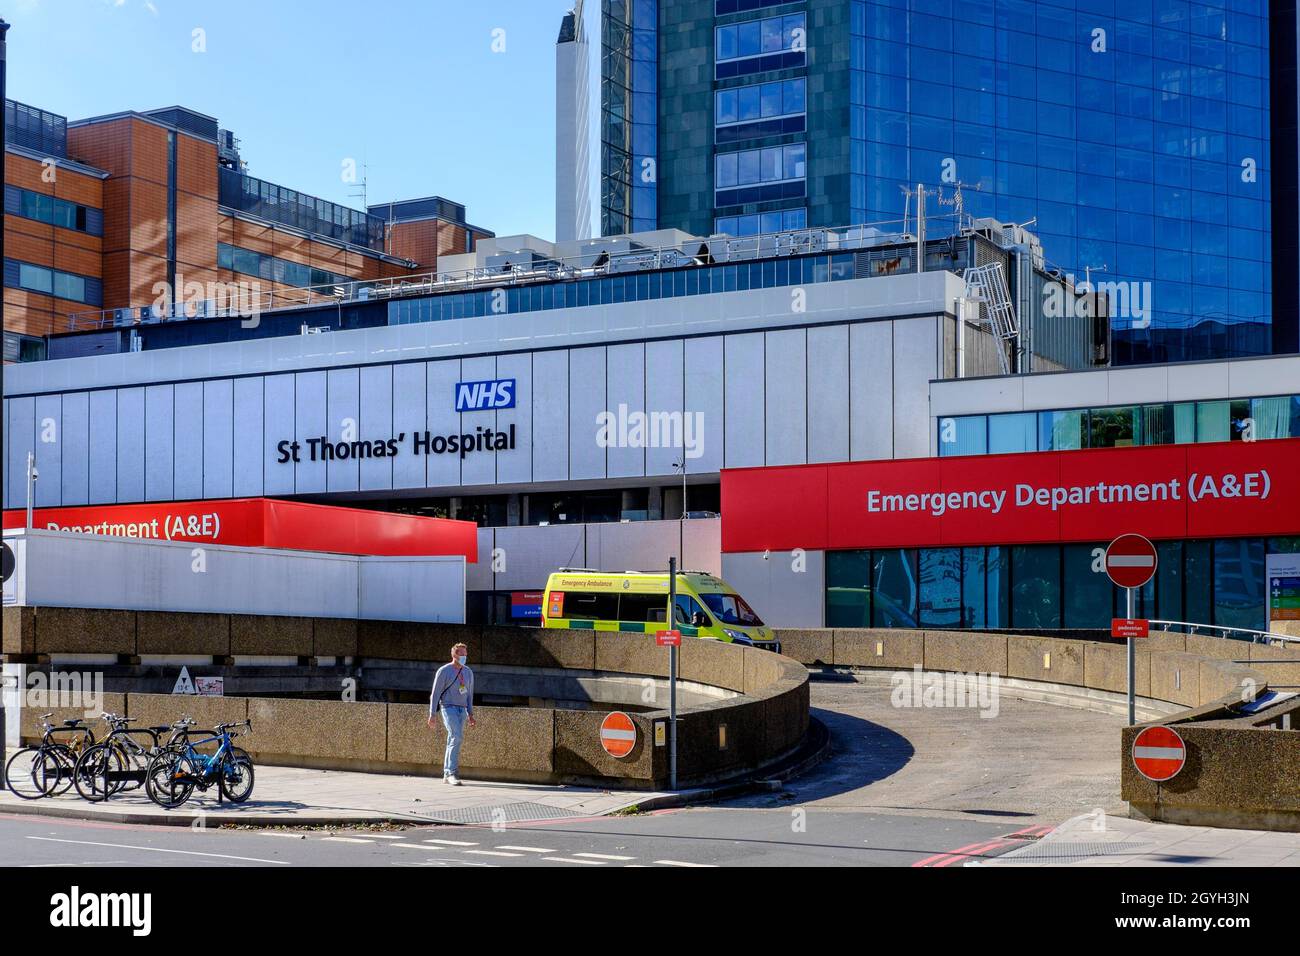 Entrée au département A&E de l'hôpital St Thomas, Londres. Banque D'Images